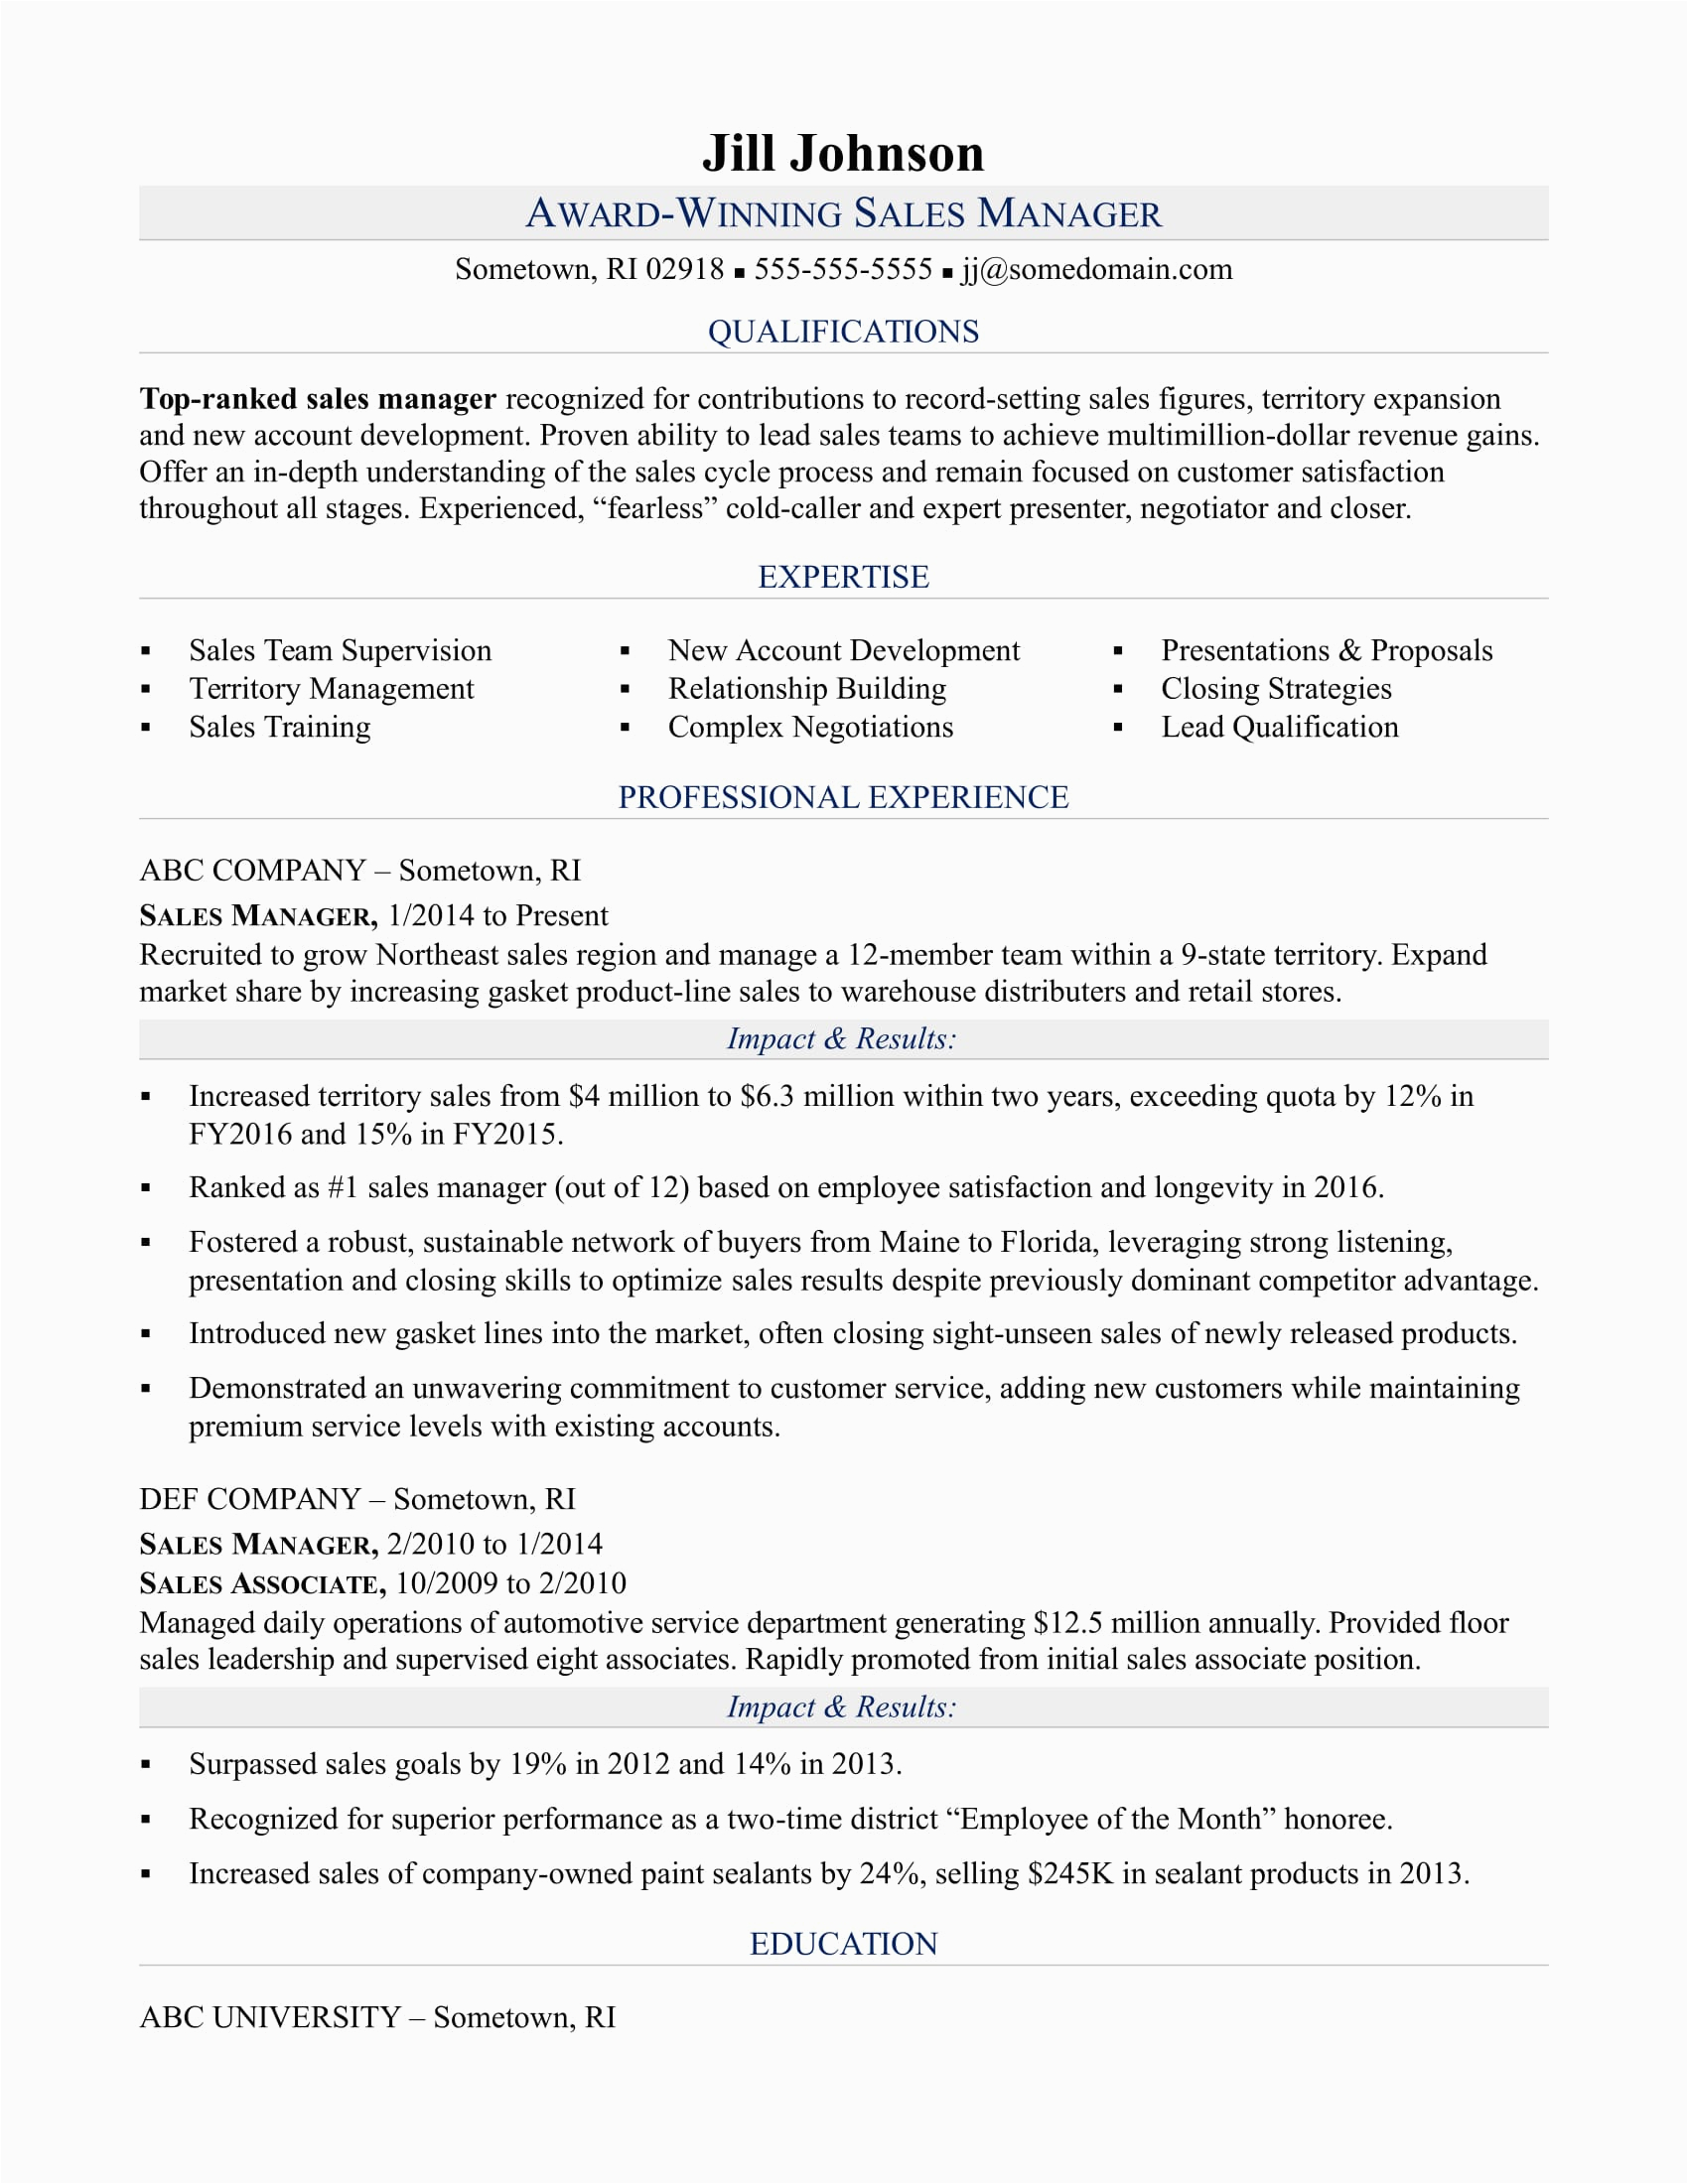 Sample Resume for Sales Manager Job Sales Manager Resume Sample